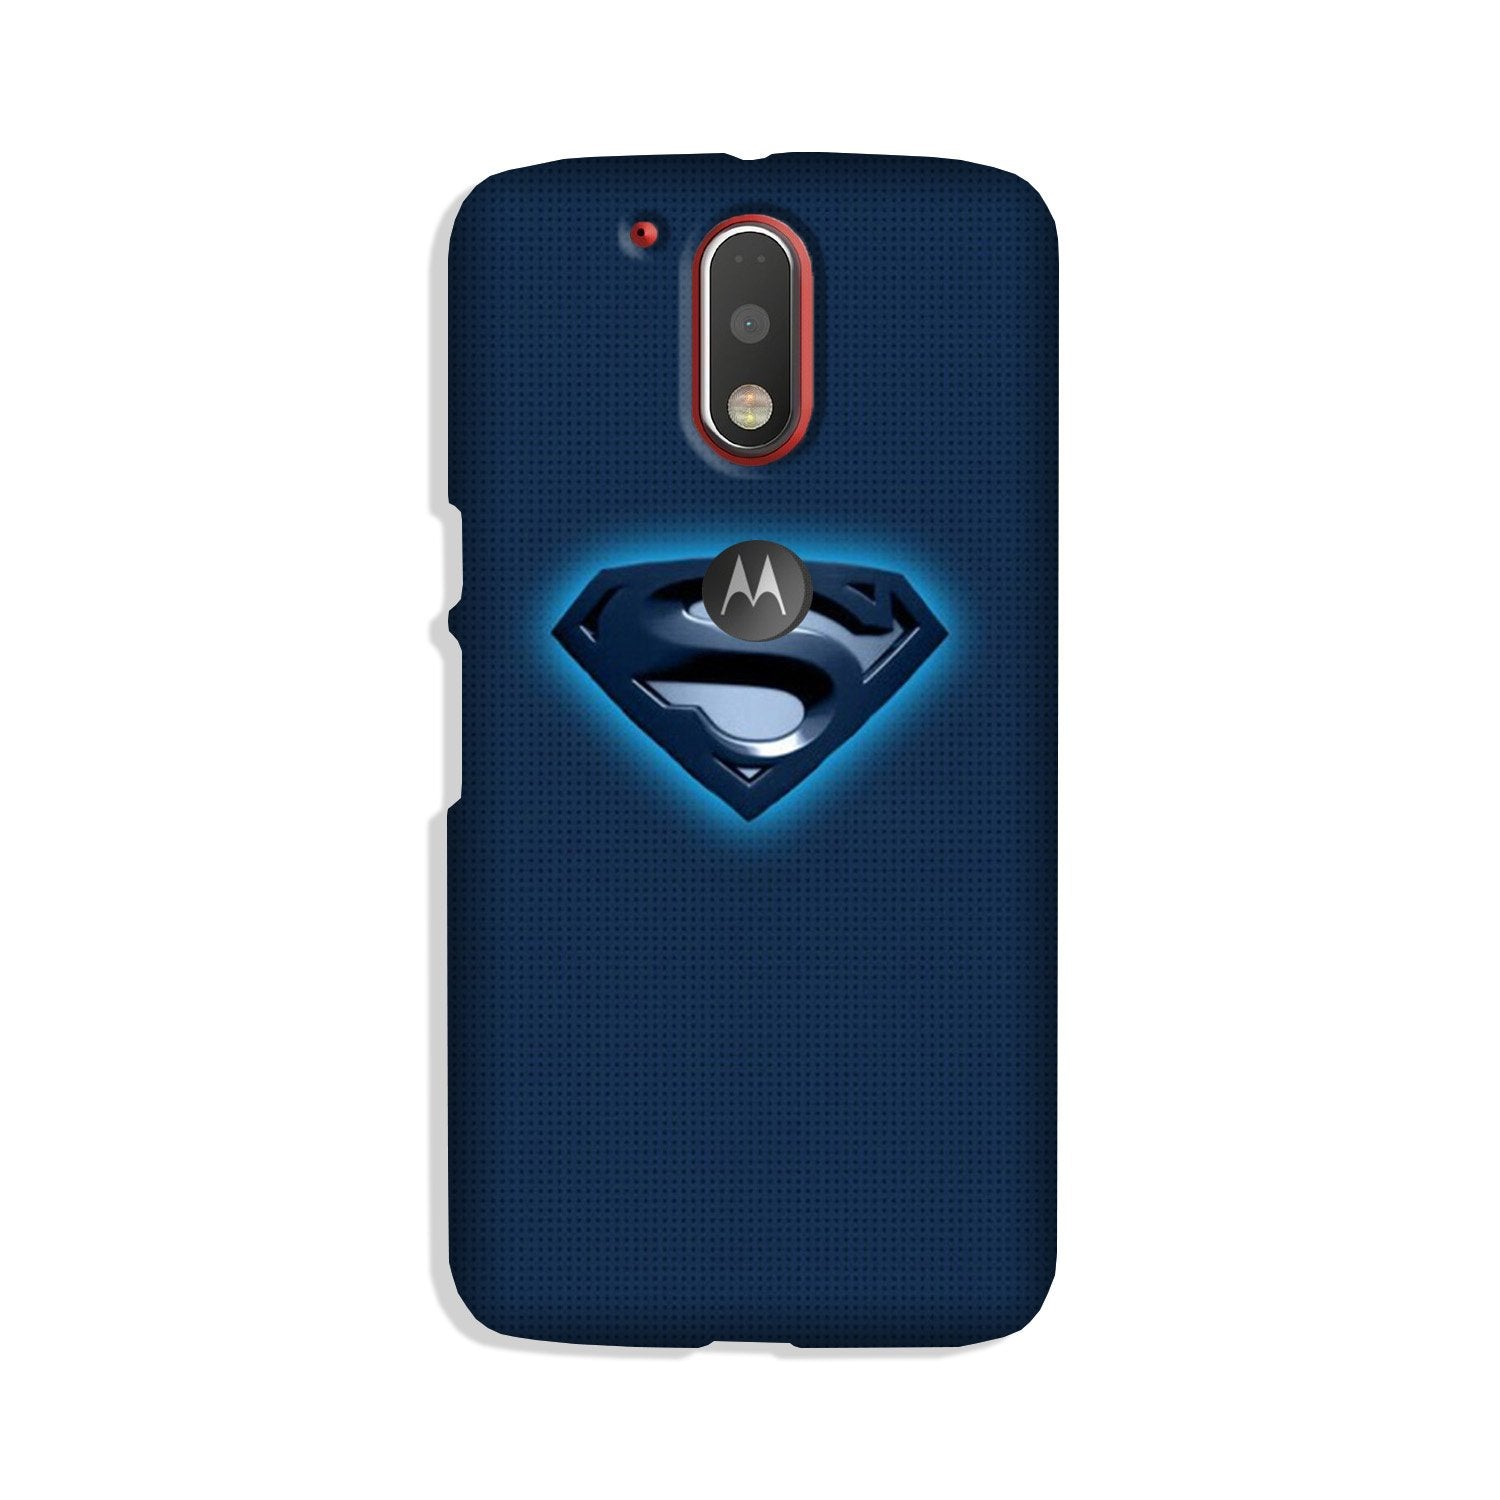 Superman Superhero Case for Moto G4 Plus(Design - 117)